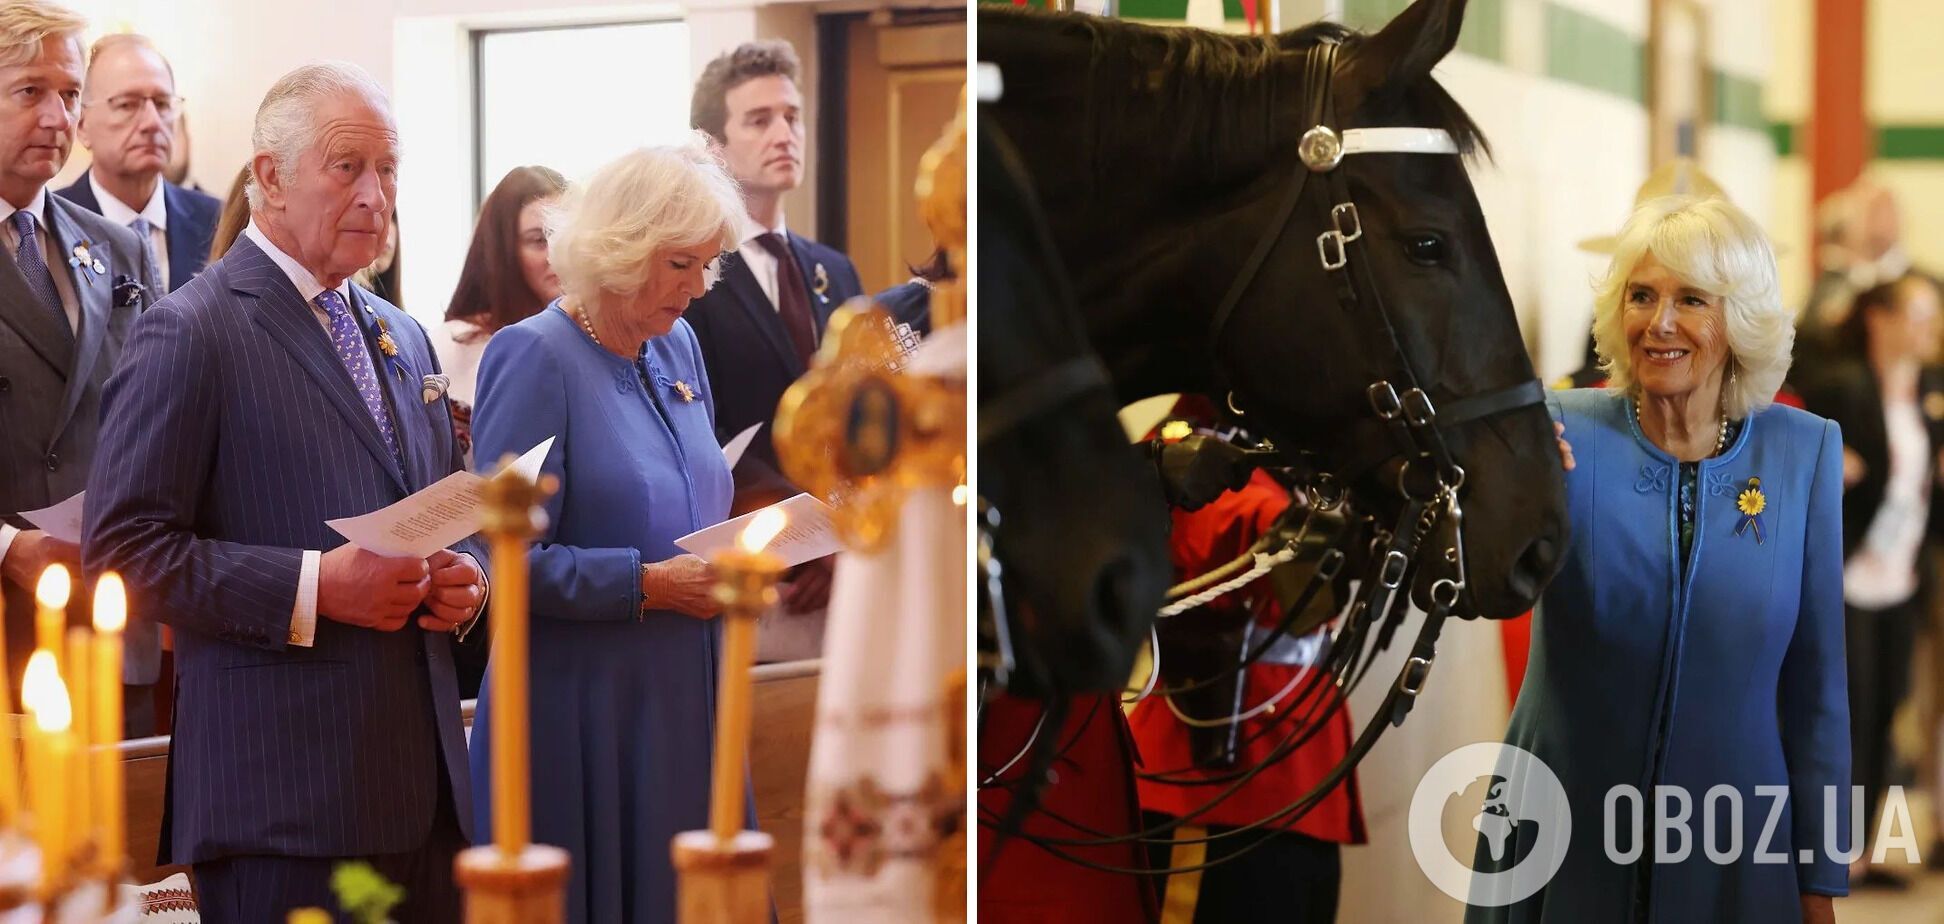 Принц Чарльз и герцогиня Камилла Корнуольская надели желто-синие аксессуары.